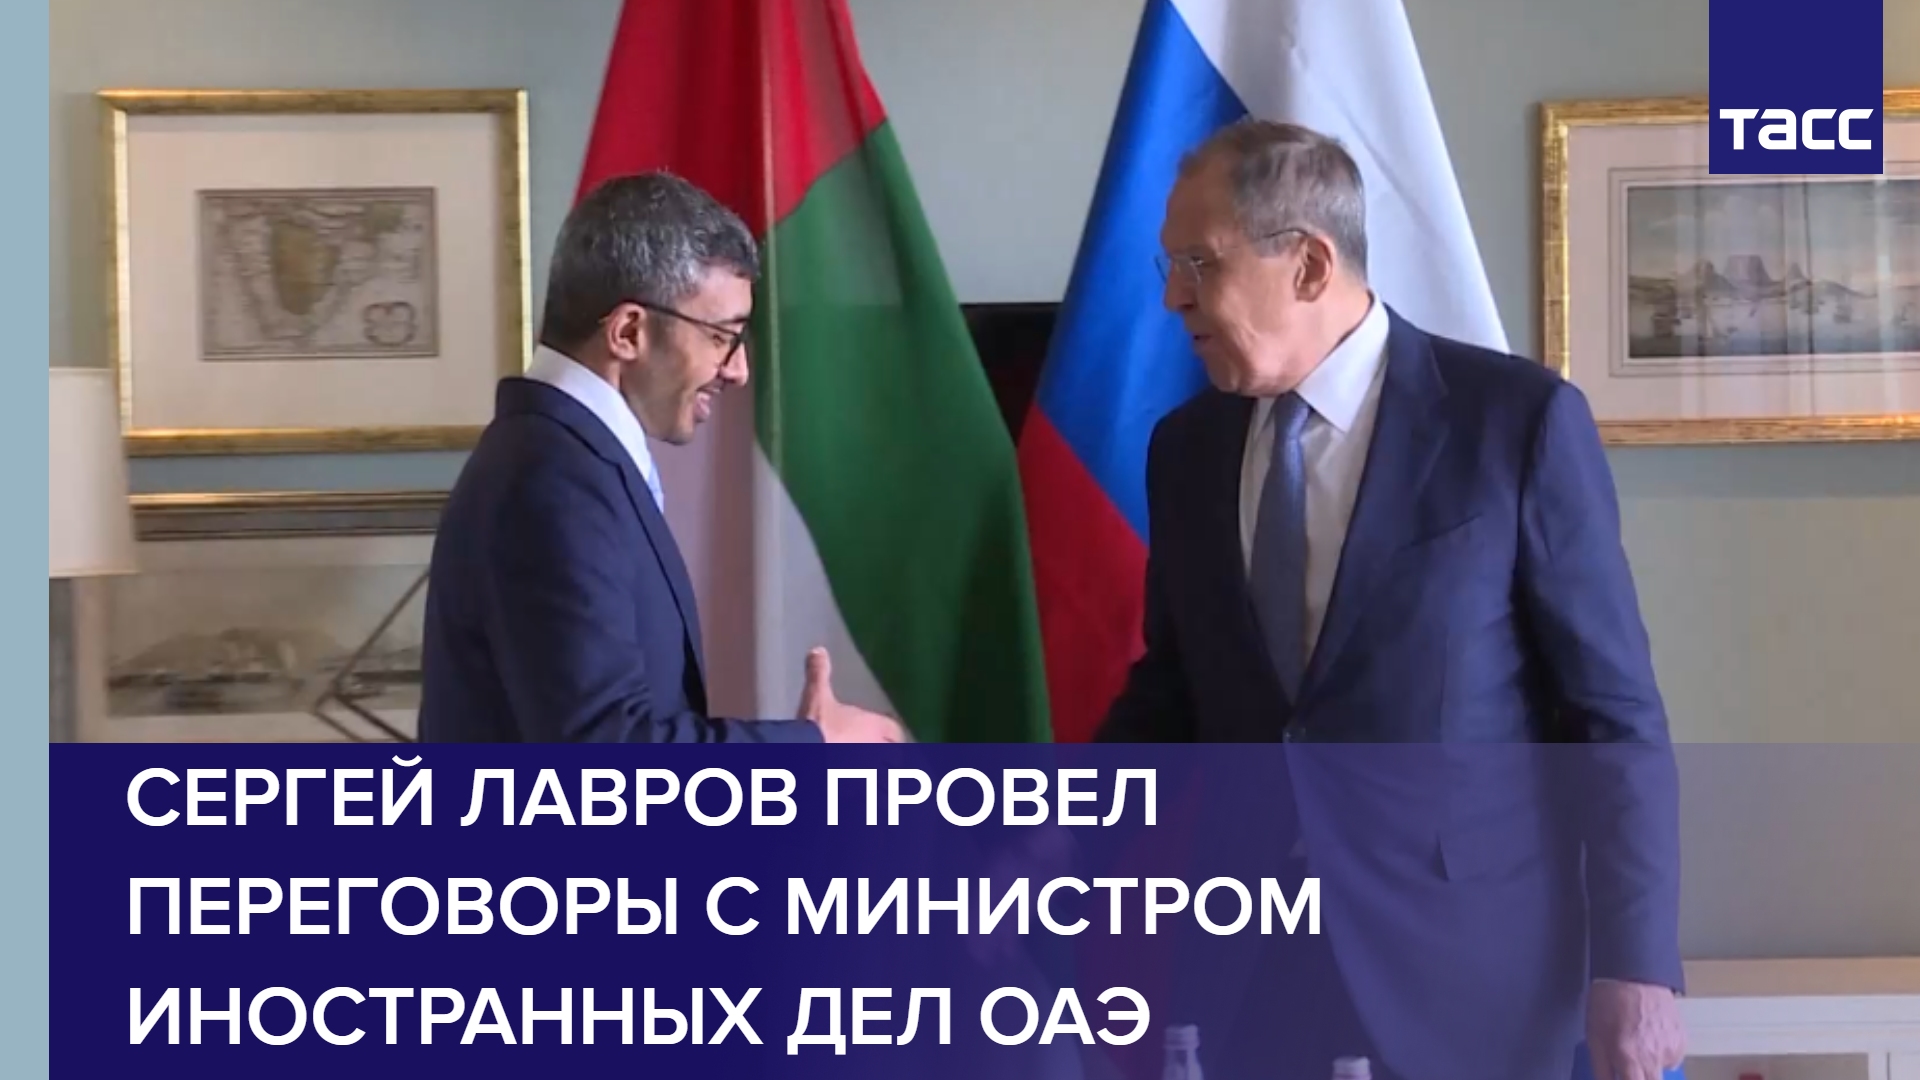 Сергей Лавров провел переговоры с министром иностранных дел ОАЭ